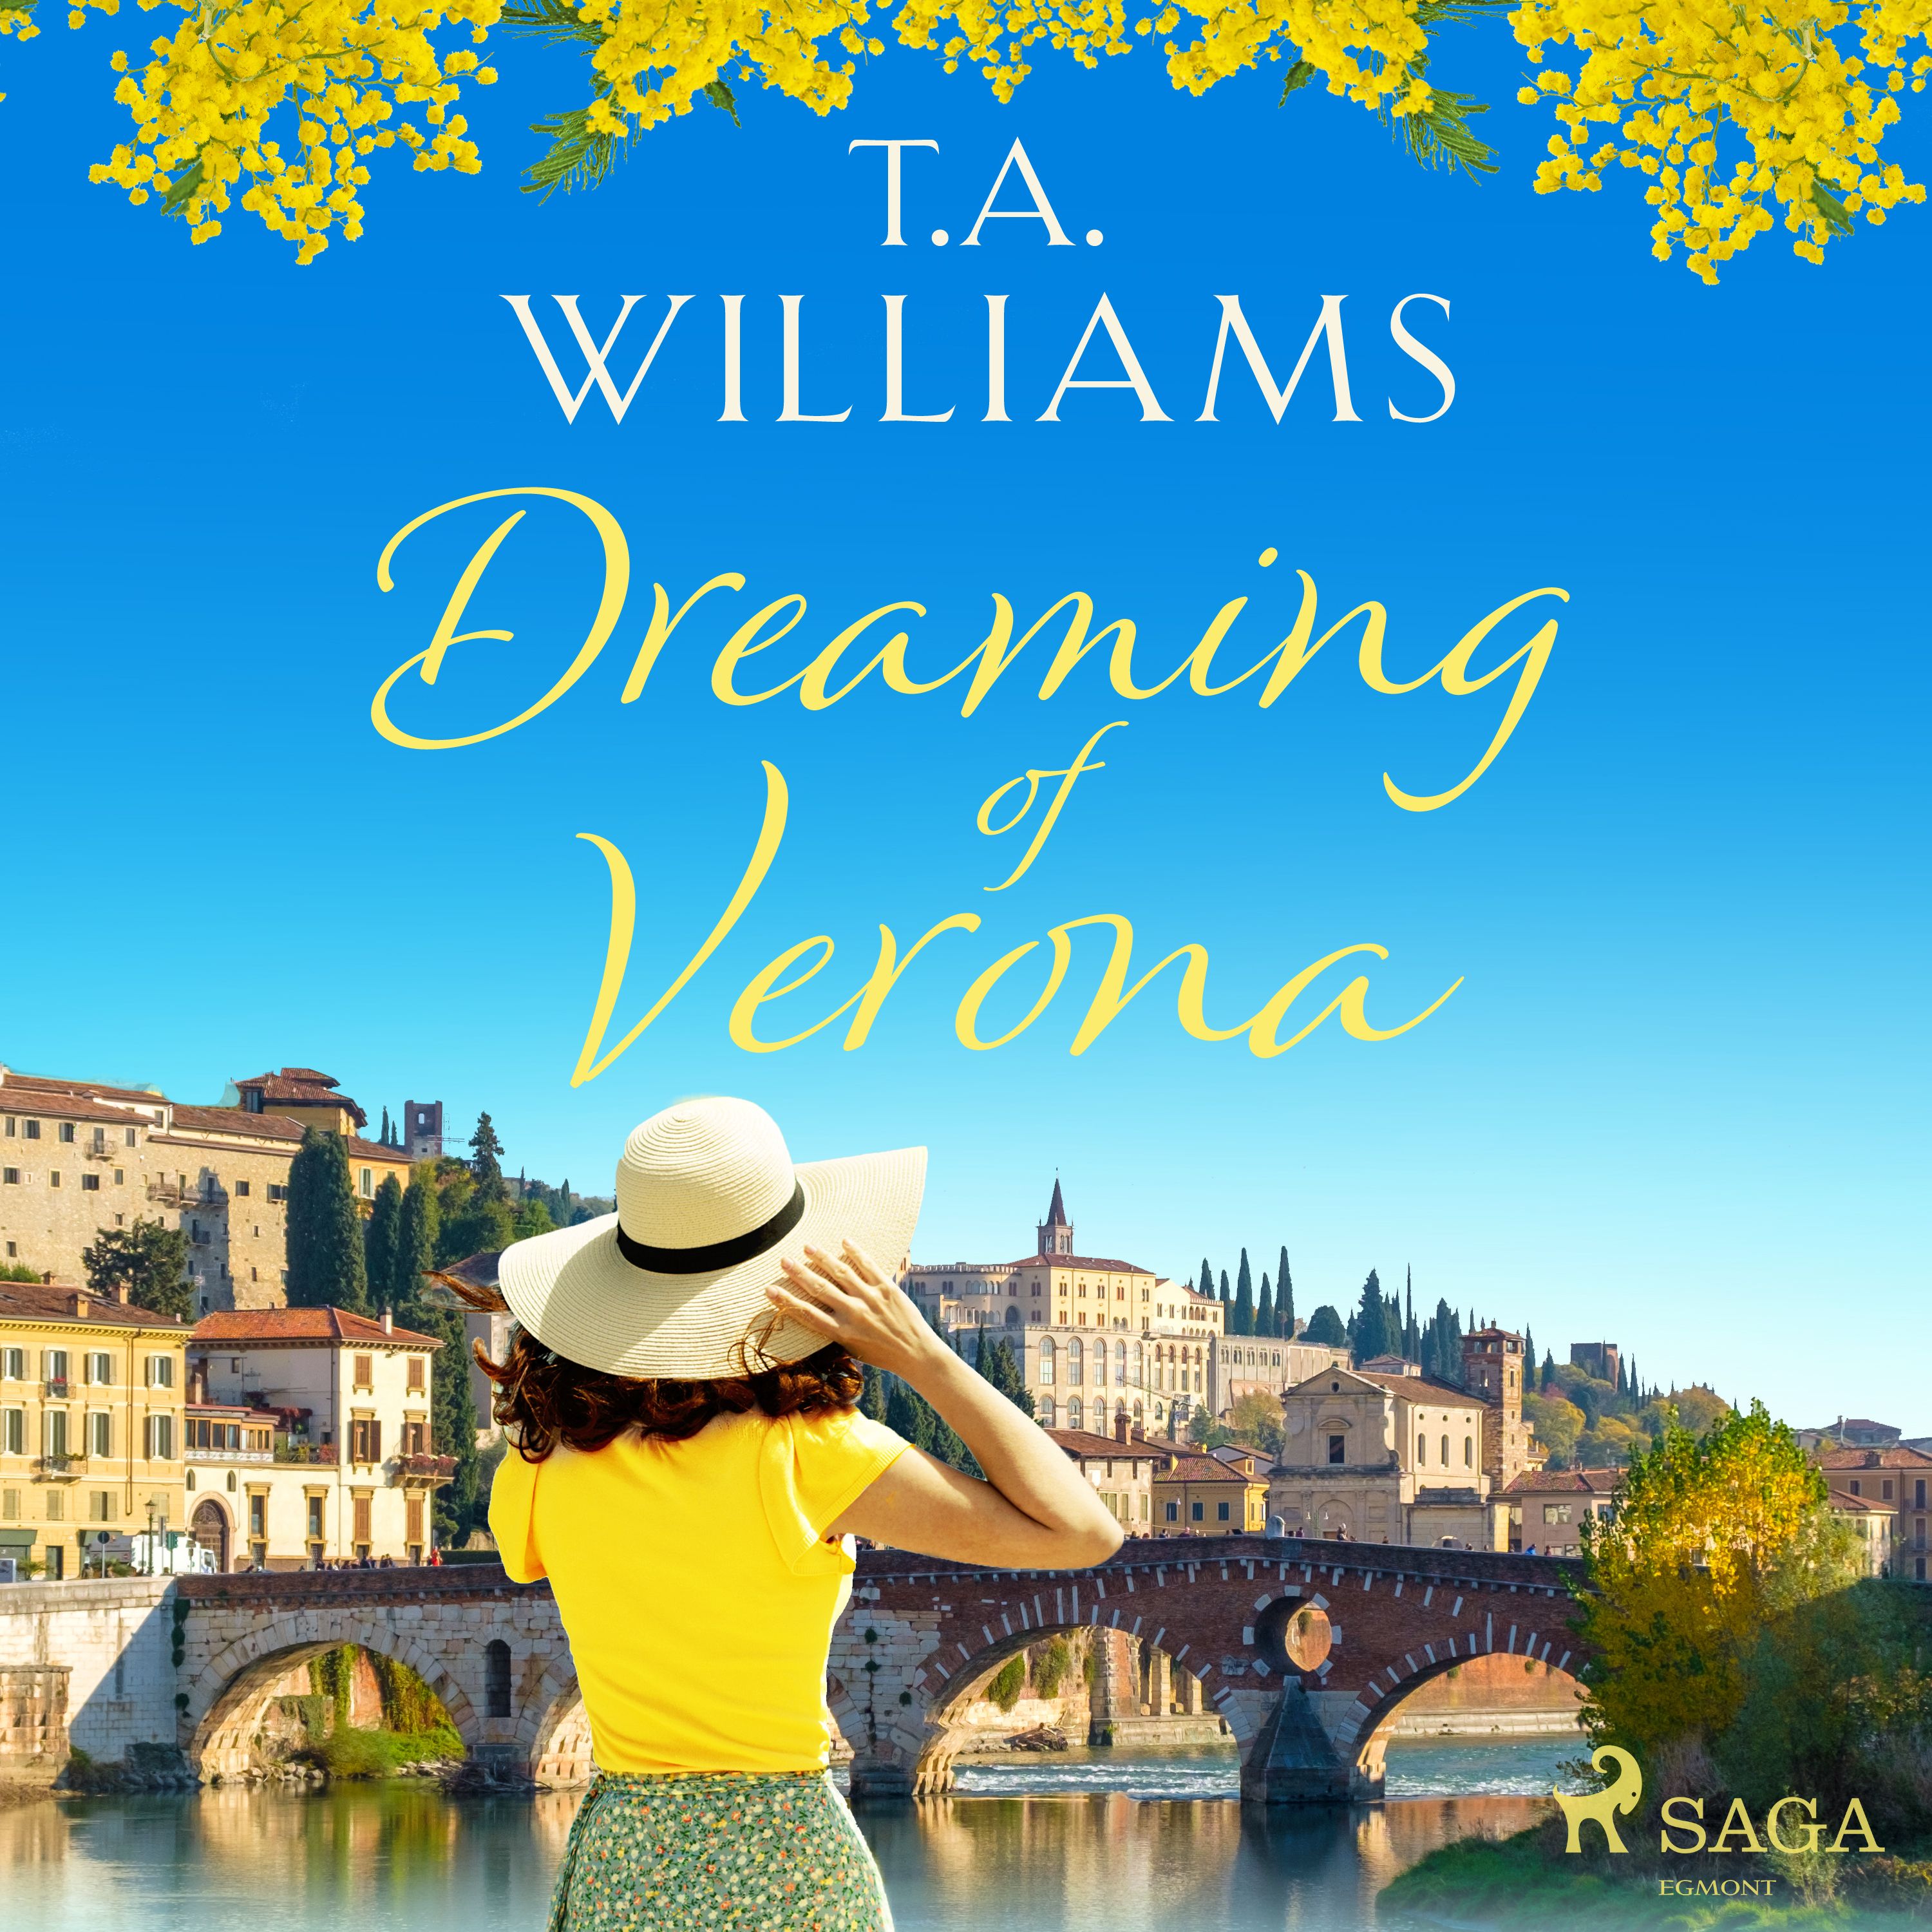 Dreaming of Verona, ljudbok av T.A. Williams